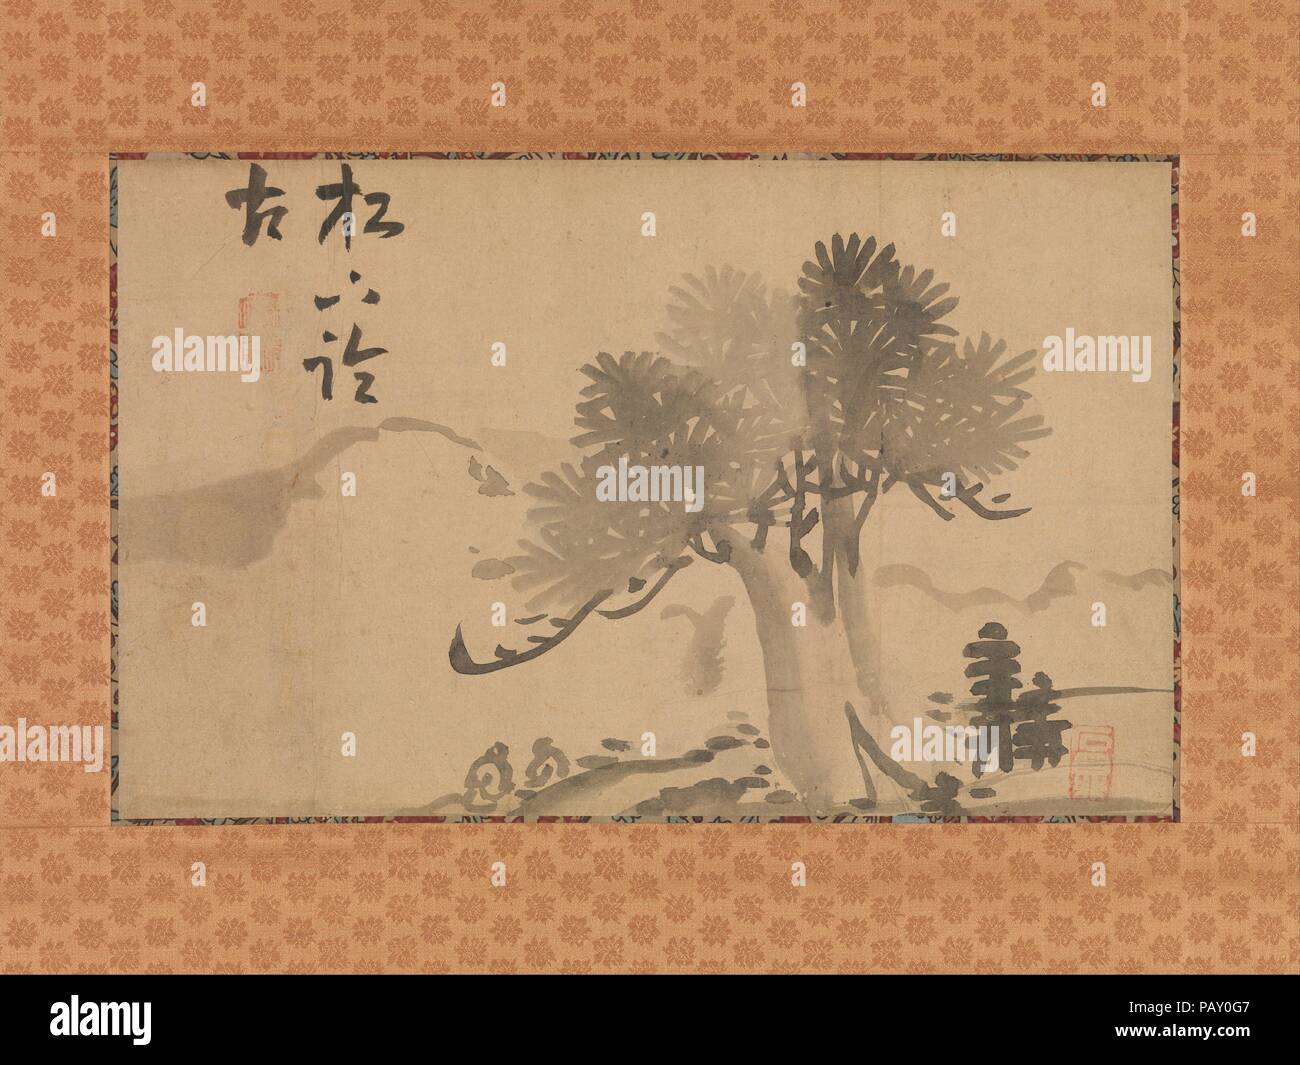 Albero di pino e calligrafia. Artista: Taiga Ike (giapponese, 1723-1776). Calligrapher: Minagawa Kien (giapponese, 1734-1807). Cultura: il Giappone. Dimensioni immagine: (a): 9. × 14 7/16 in. (22,8 × 36,6 cm) complessivamente con il supporto di montaggio (a): 39 3/8 × 19 7/16 in. (100 × 49,4 cm) in generale con le manopole (A): 39 3/8 × 21 7/16 in. (100 × 54,5 cm) immagine (b): 9 5/16 × 14 15/16 in. (23,6 × 38 cm) complessivamente con il supporto di montaggio (B): 39 3/8 × 19 1/2 in. (100 × 49,6 cm) in generale con le manopole (B): 39 3/8 × 21 9/16 in. (100 × 54,7 cm). Data: tardo XVIII-XIX secolo. Queste opere sono parte di un gruppo di nove scorre appeso e un'albu Foto Stock